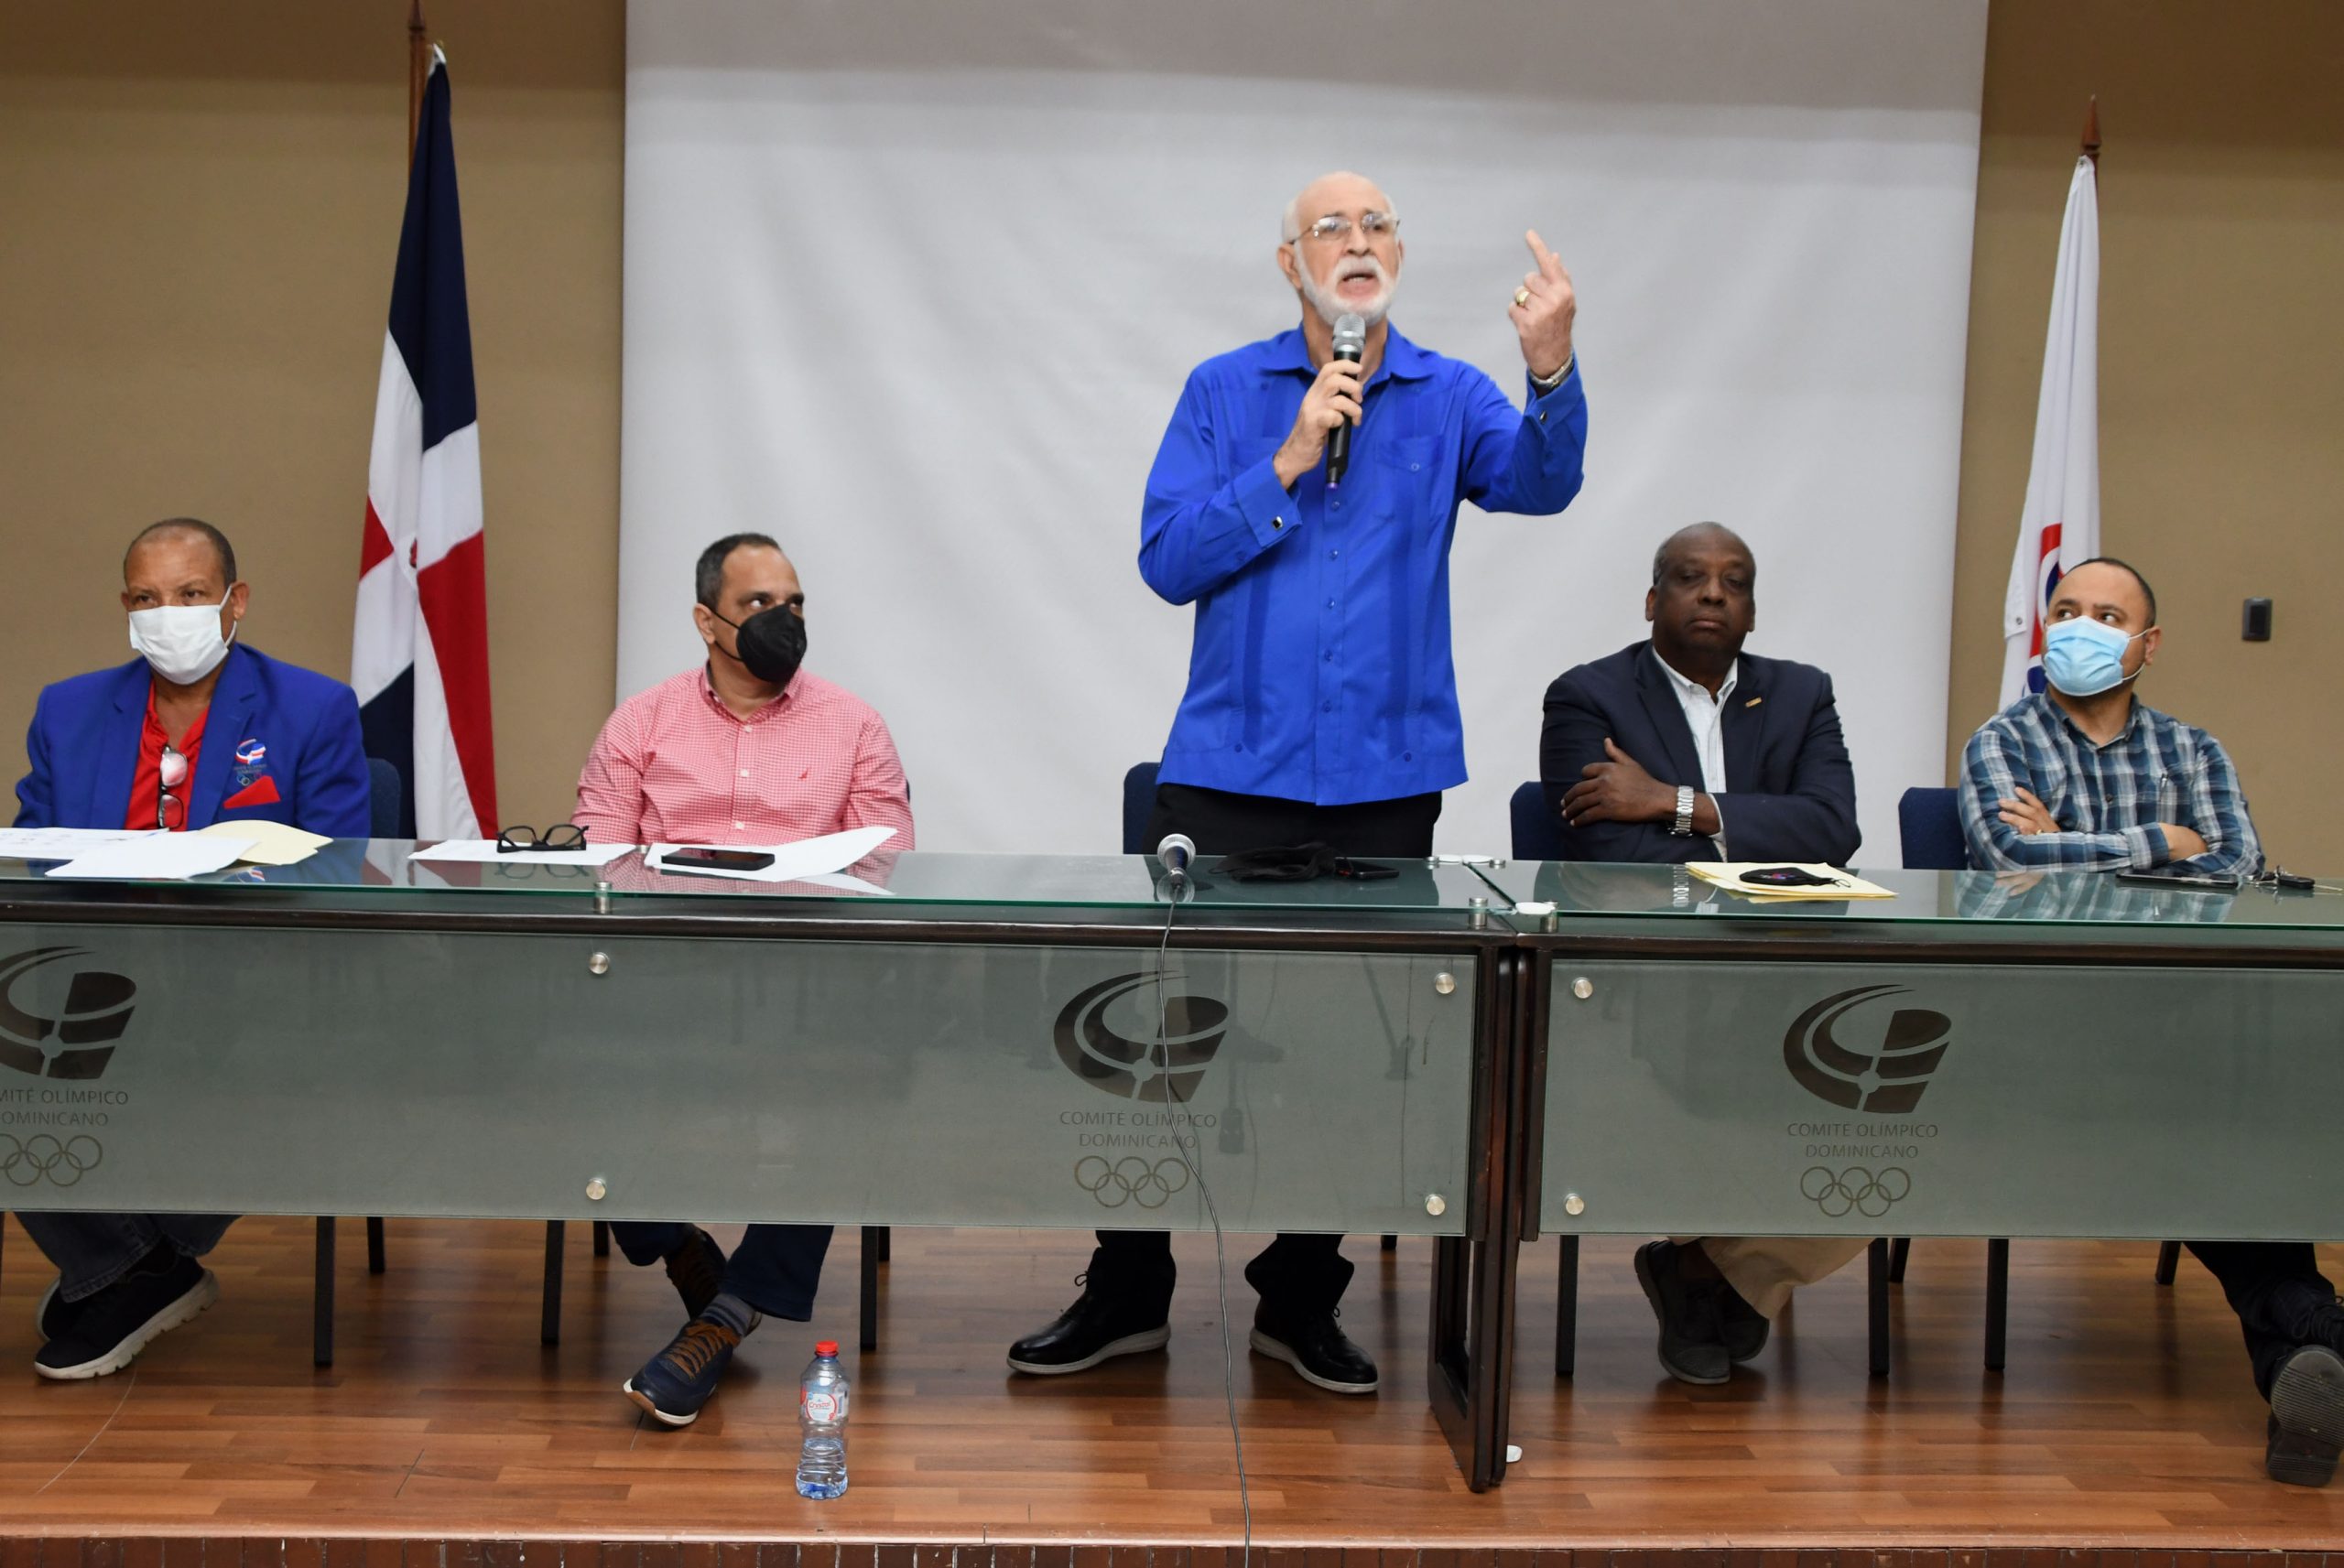 El presidente del Comité Olímpico Dominicano (COD), licenciado Antonio Acosta Corletto, destacó el compromiso que tiene el COD con los Juegos Bolivarianos y los Caribeños, indicando que ha iniciado la ruta crítica del presente ciclo olímpico que culminará con los Juegos Olímpicos de París 2024.